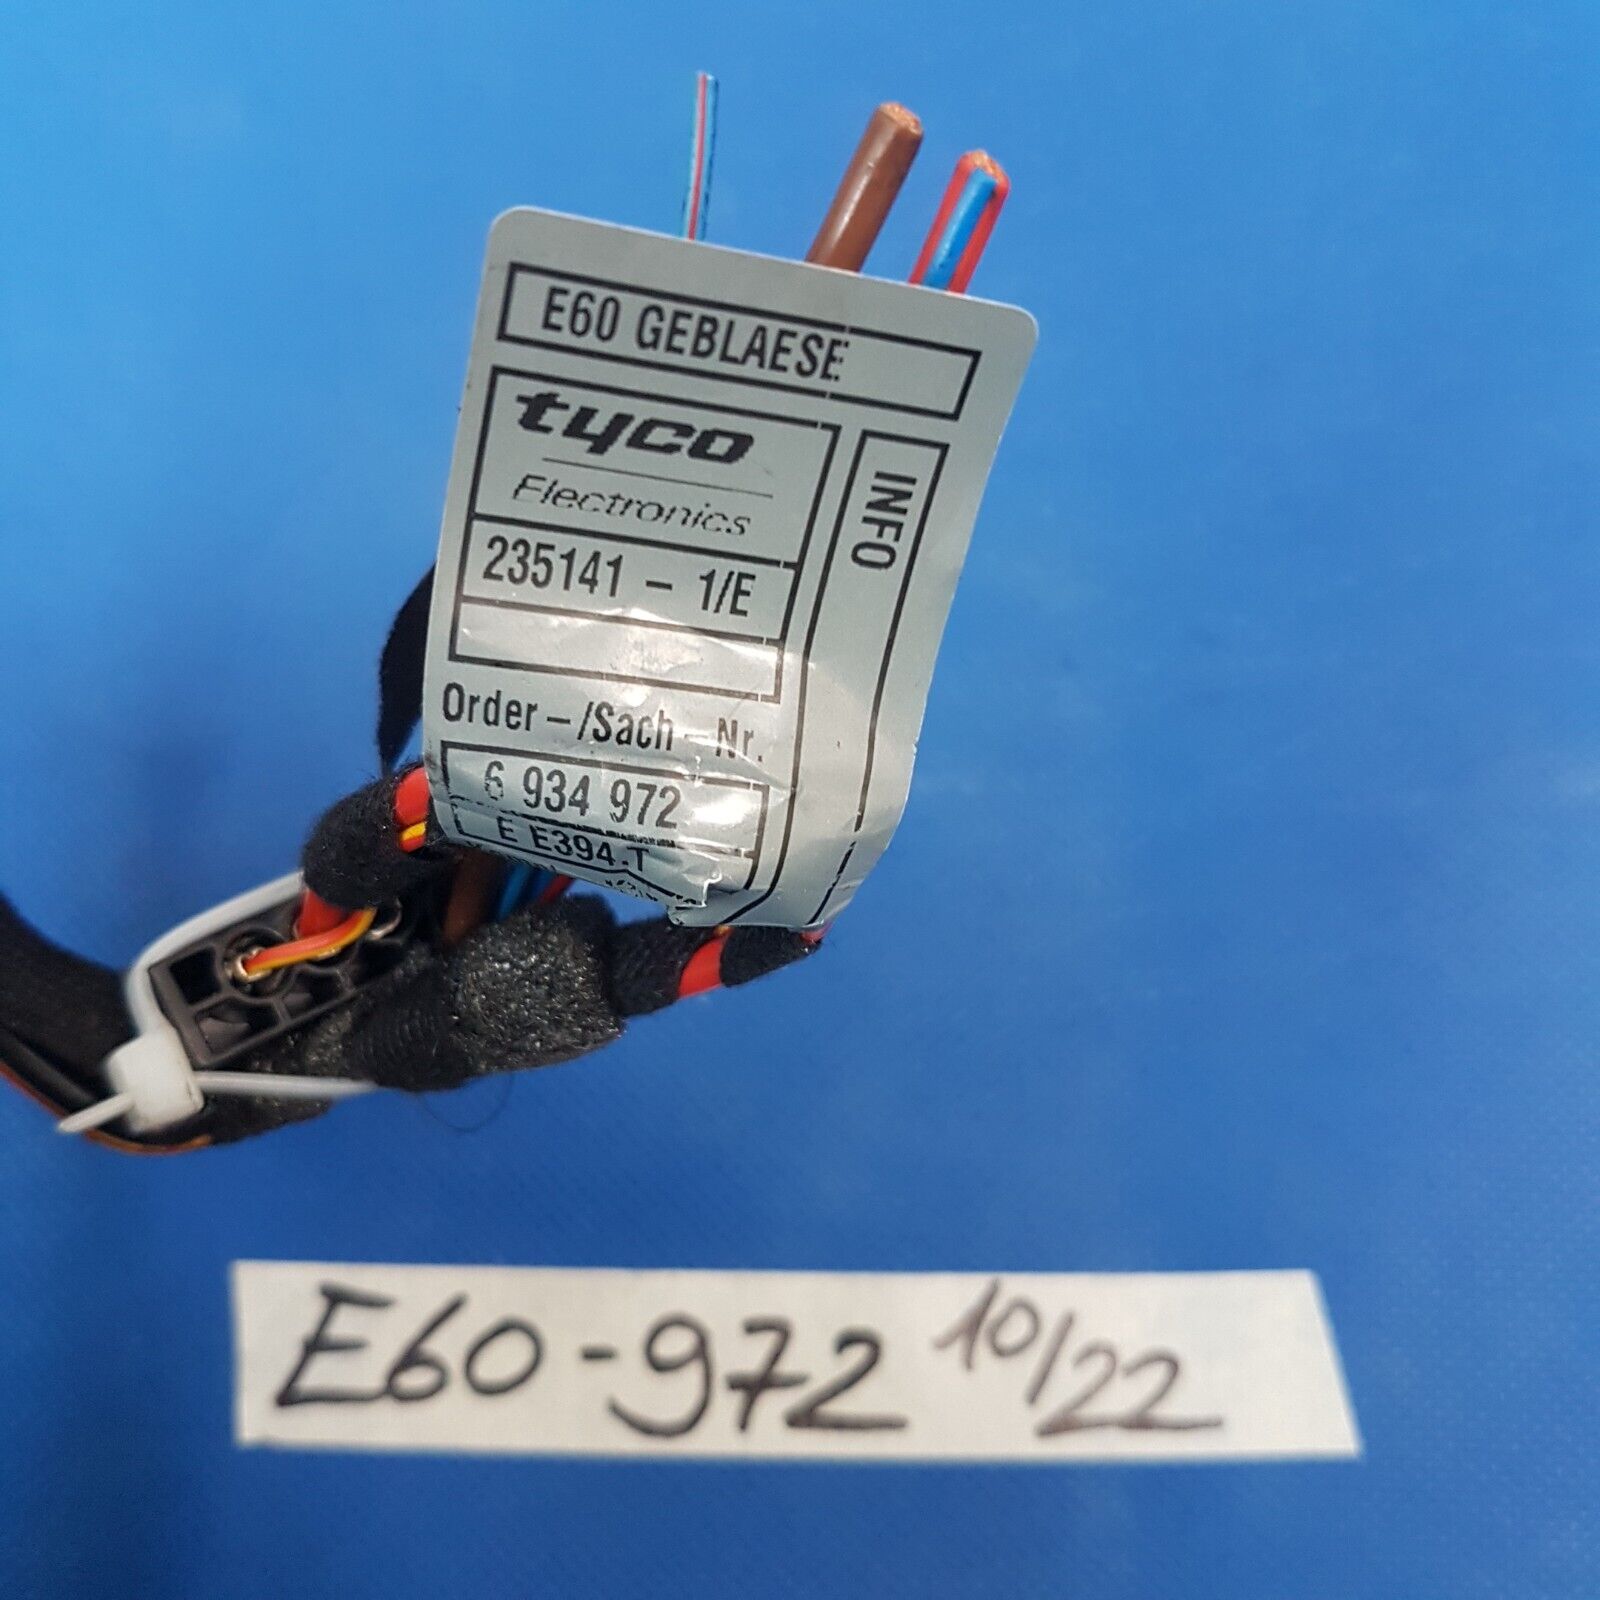 BMW E60 E61 E63 Kabel für Gebläse Widerstand Lüfter Motor Heizung 6934972